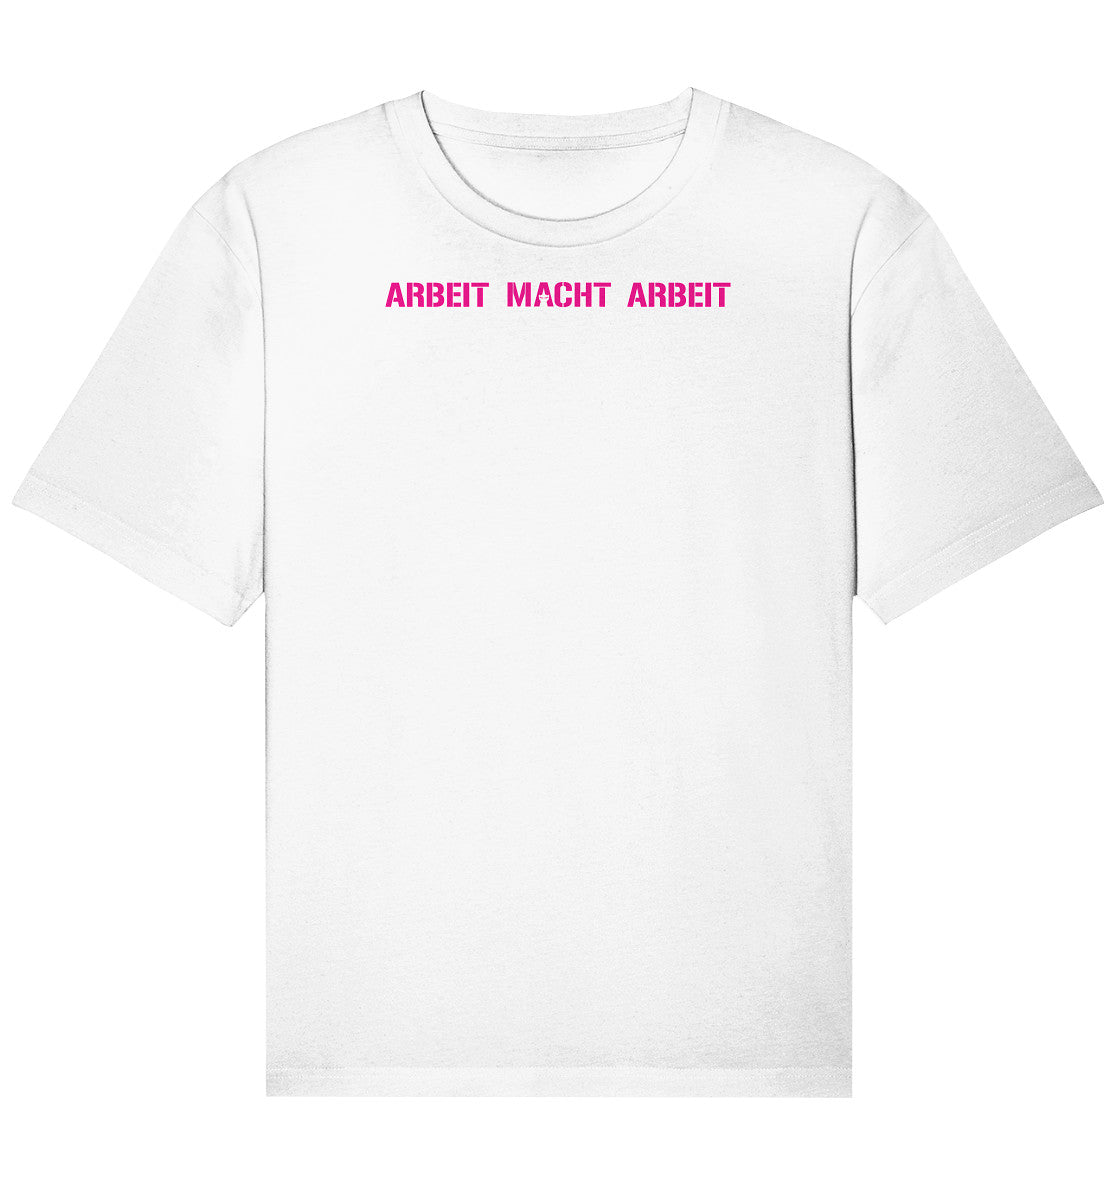 ARBEIT MACHT ARBEIT - Organic Relaxed Shirt